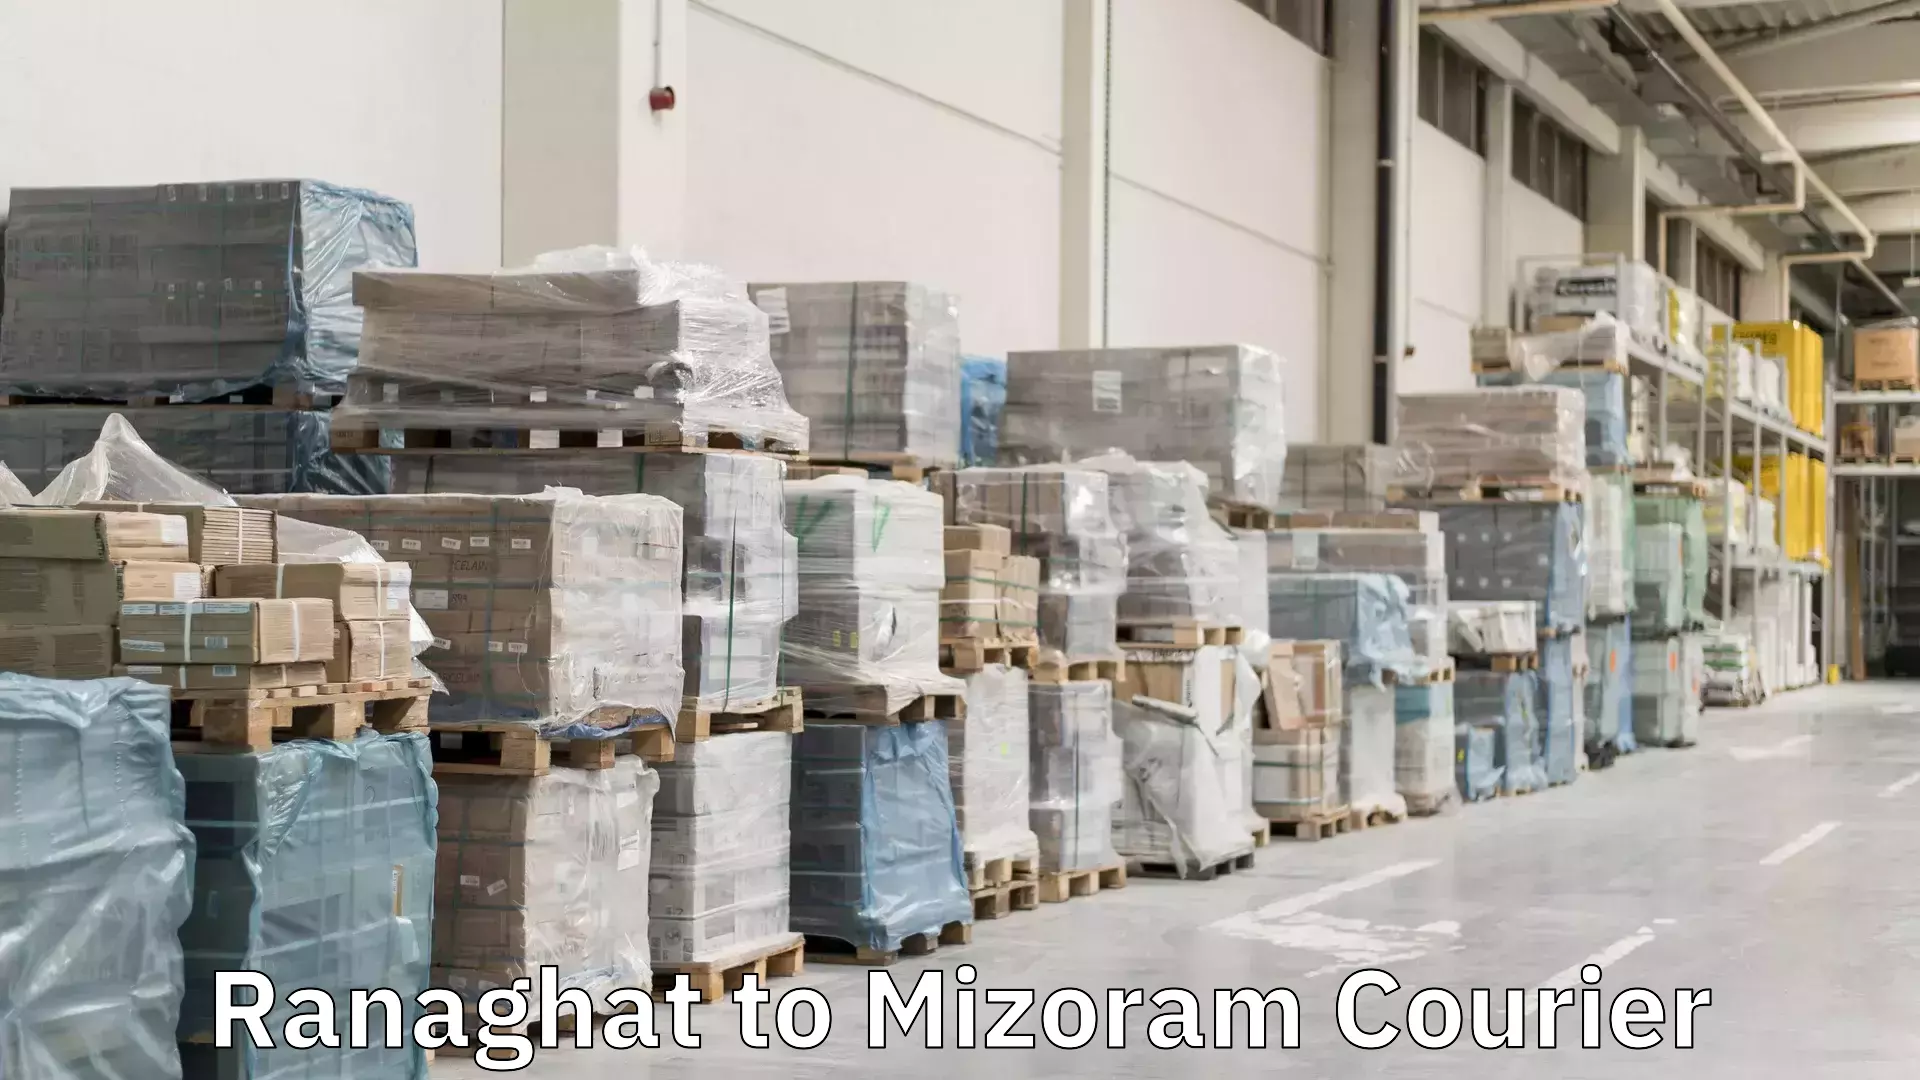 Doorstep delivery service Ranaghat to Mizoram